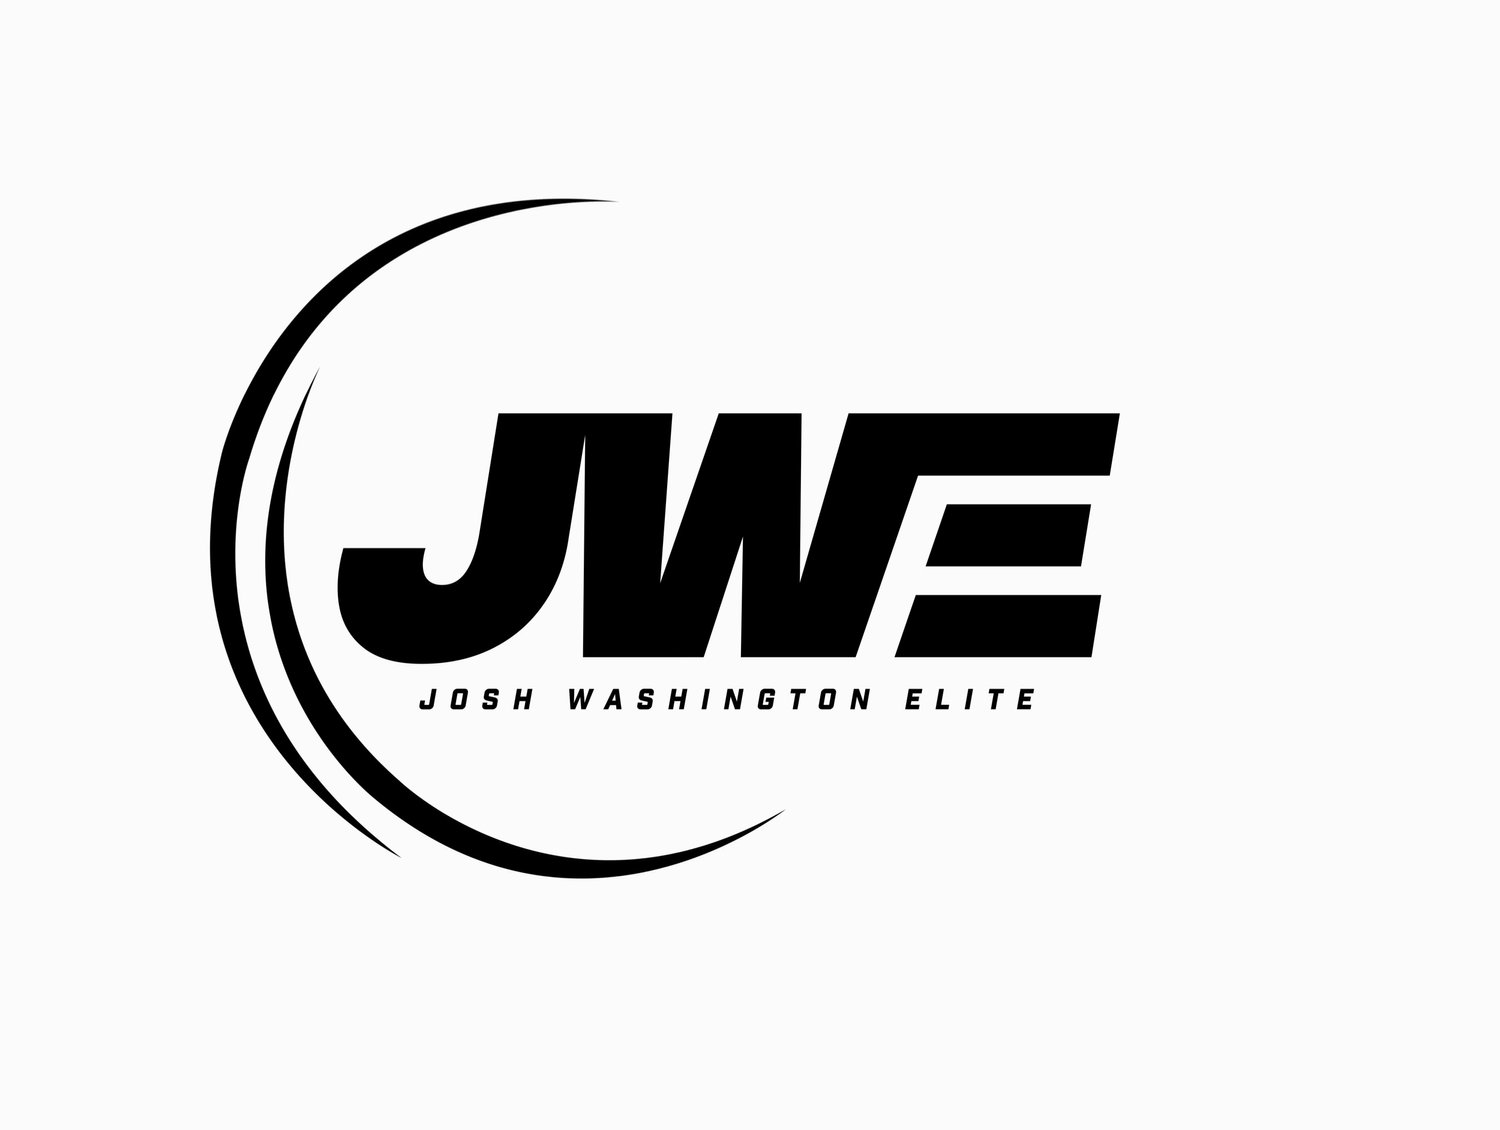 Josh Washington Elite